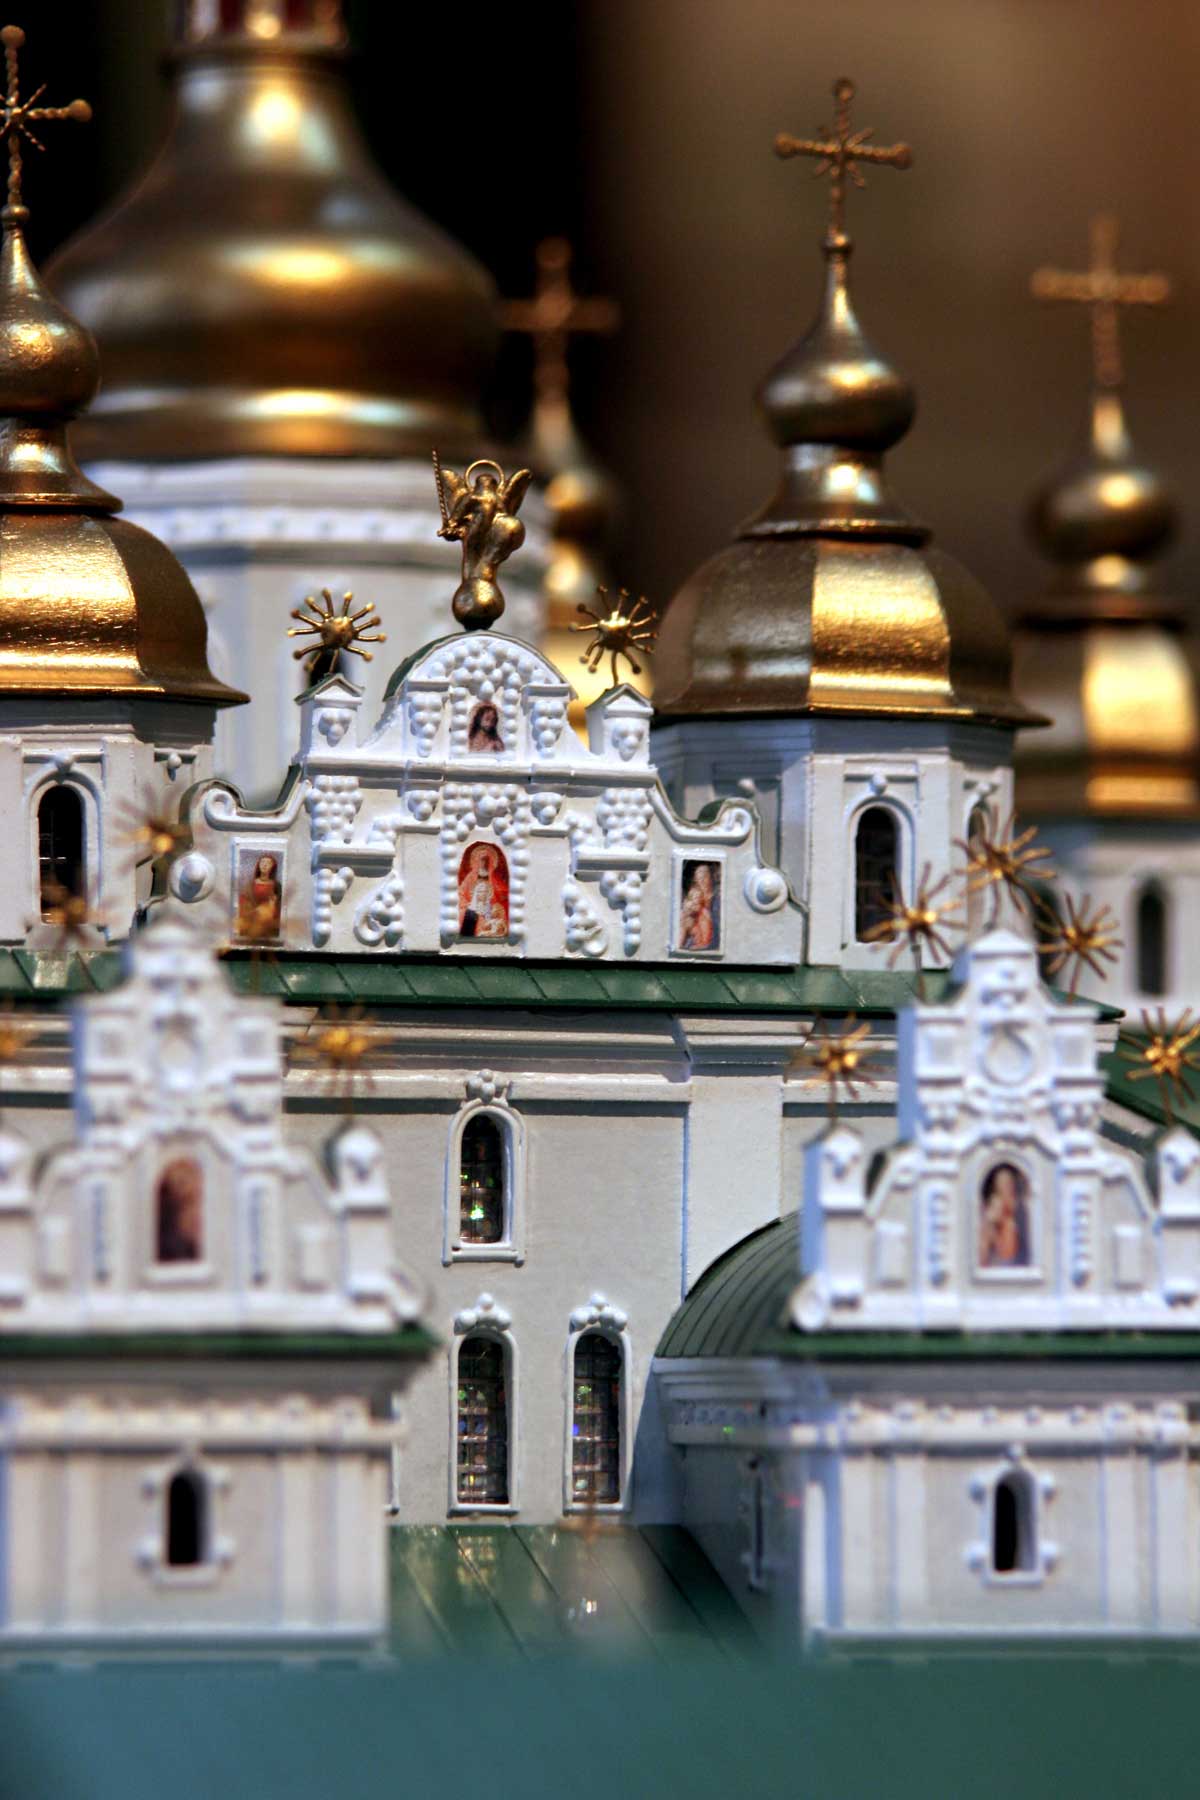 Модель Михайлівського Золотоверхого монастиря на 1914 рік. Знаходиться в музеї Михайлівського Собору. М 1:200, розмір підмакетніка 200х200 см.